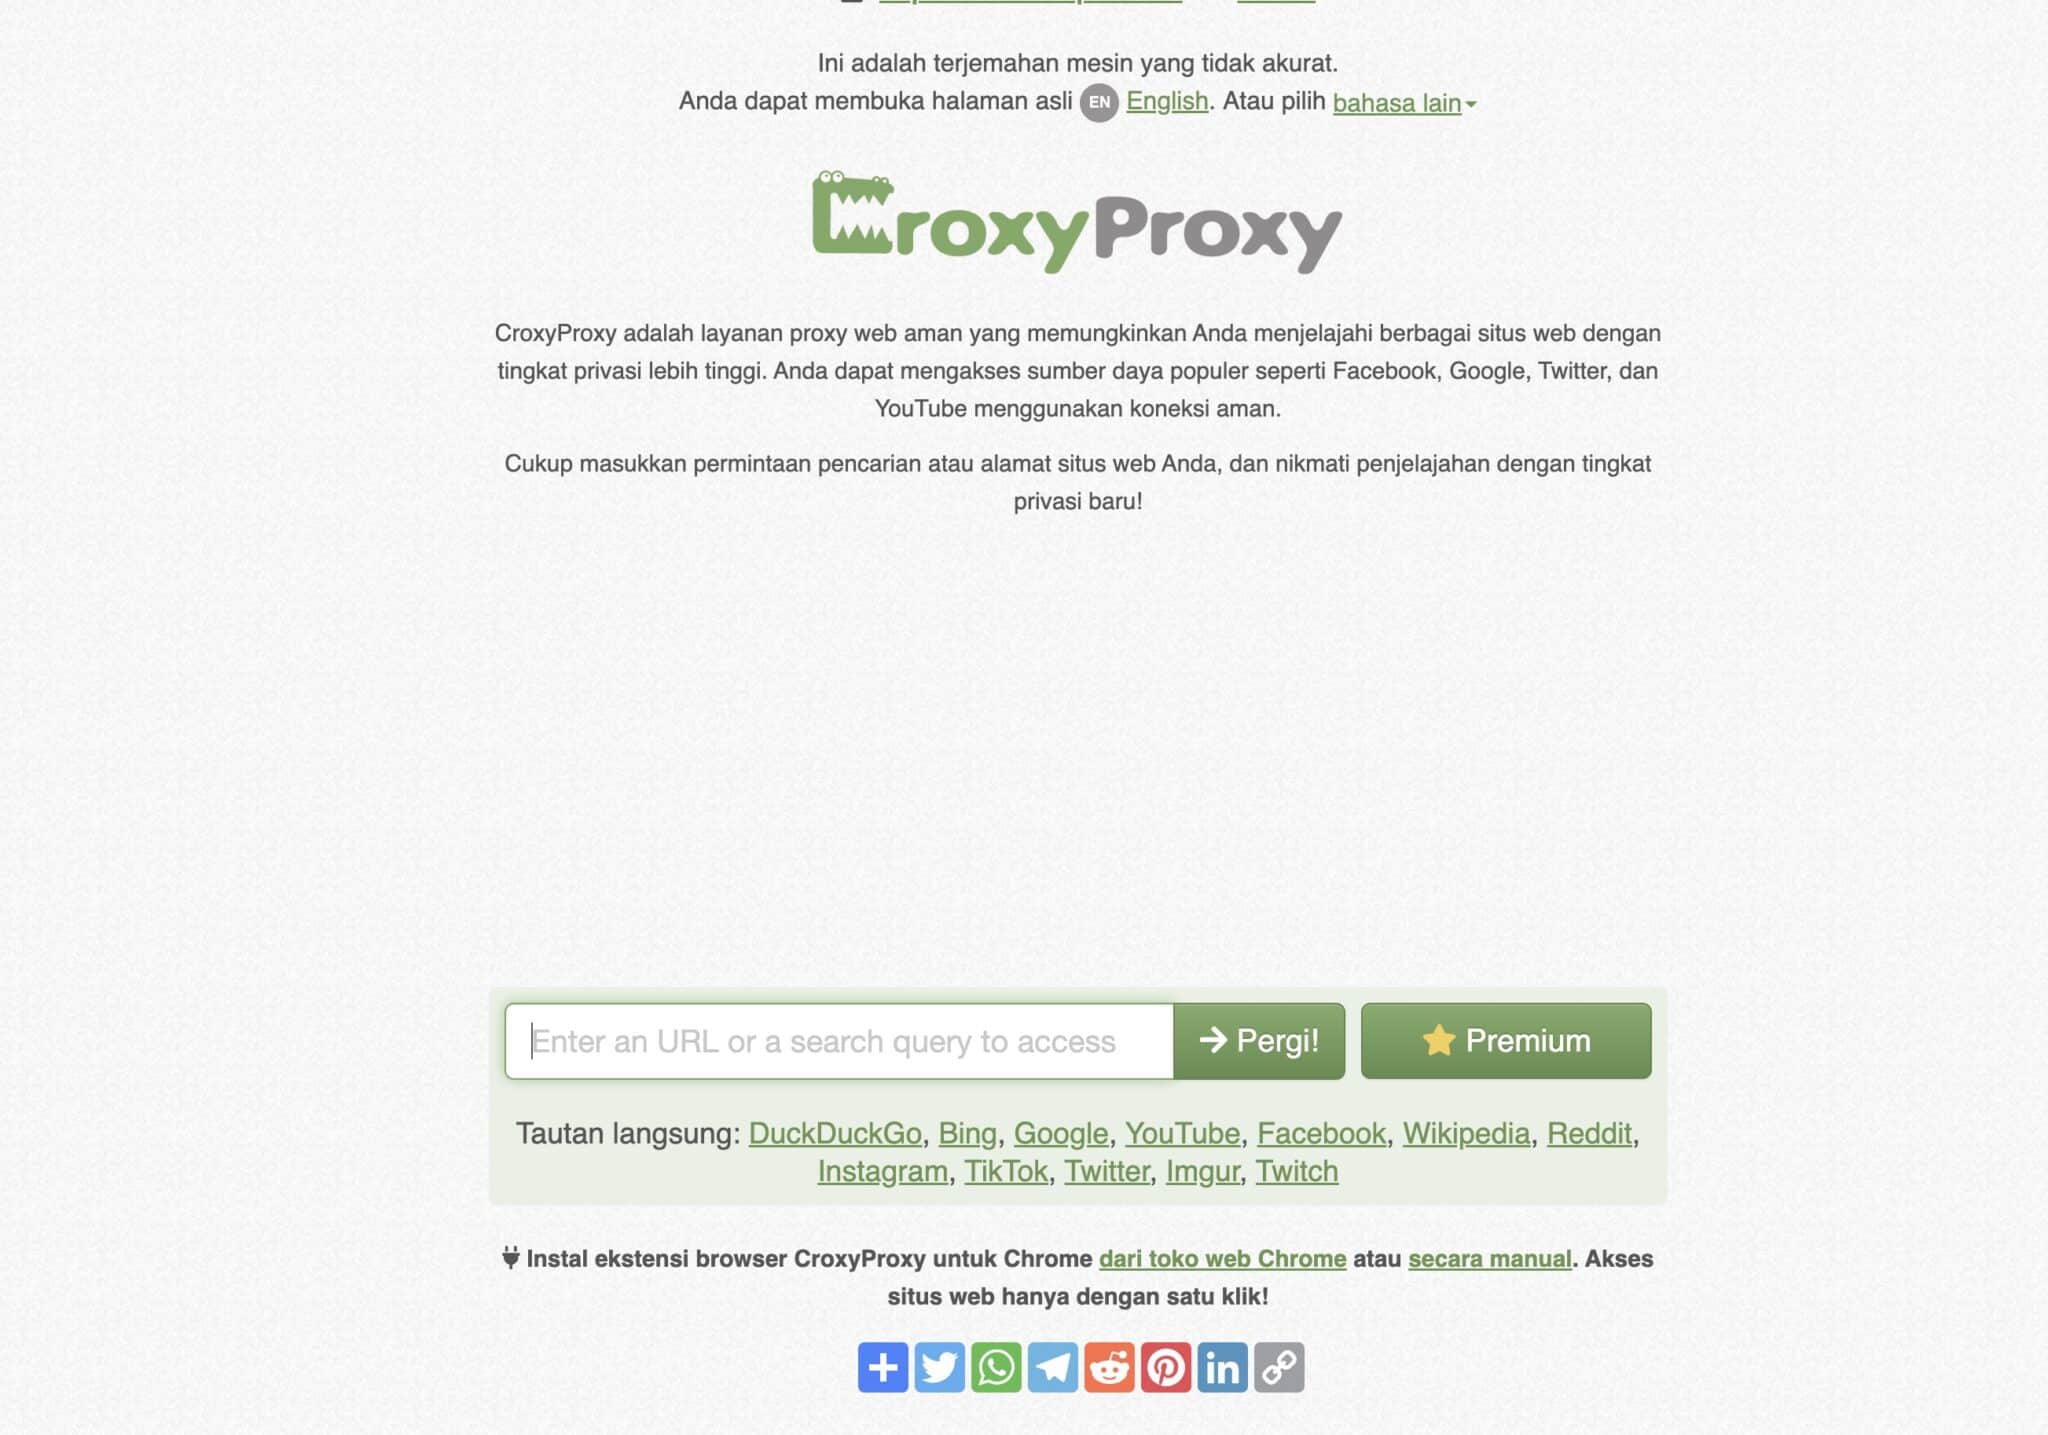 അടിസ്ഥാന CroxyProxy സവിശേഷതകൾ: CroxyProxy ഉപയോഗിച്ച് ഇൻ്റർനെറ്റിൻ്റെ പവർ അൺലോക്ക് ചെയ്യുക